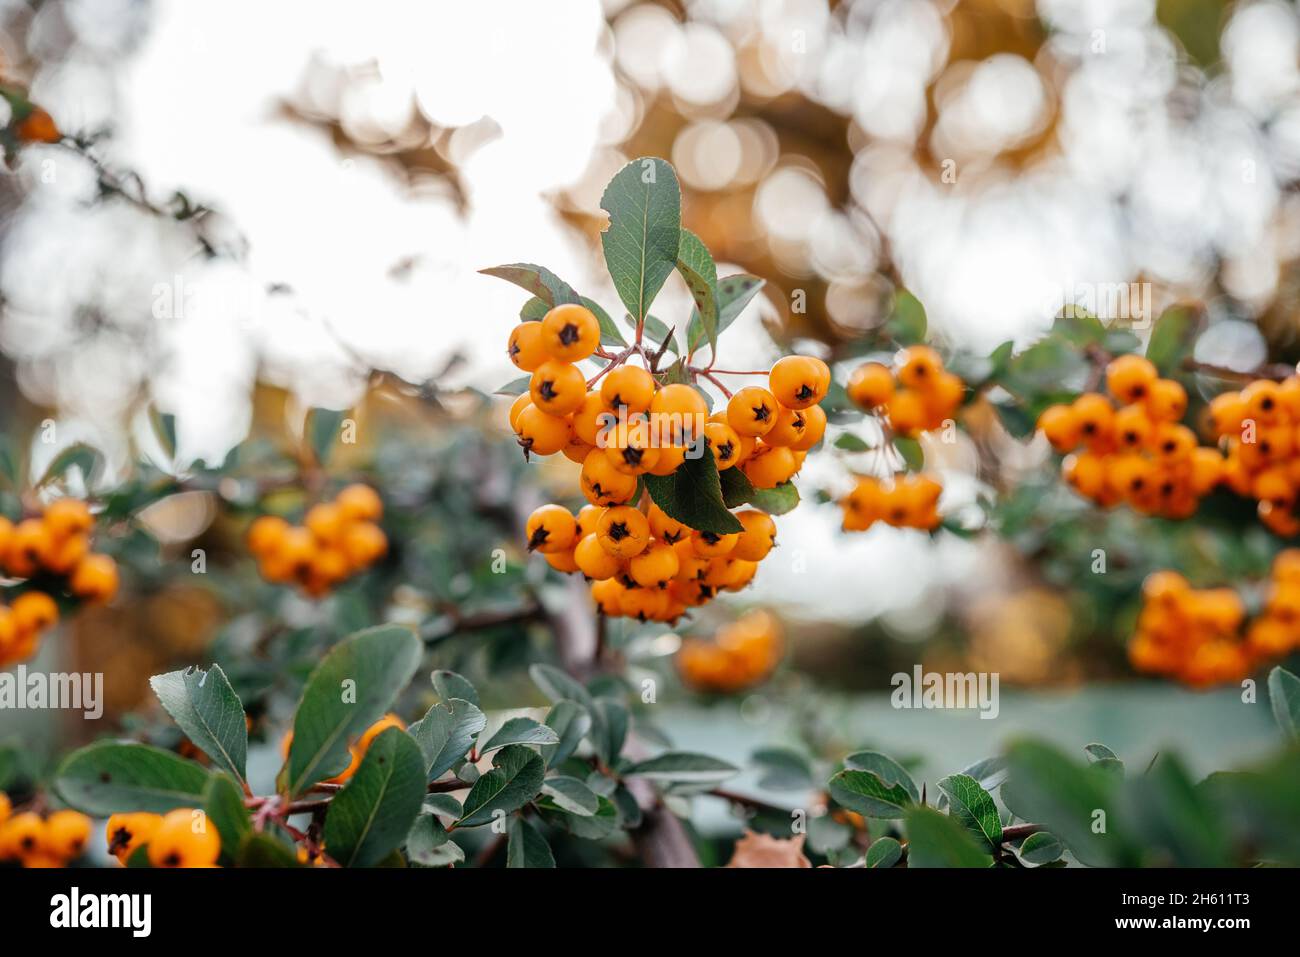 Beautiful orange berries of Piracantha firethorn in autumn garden Stock Photo